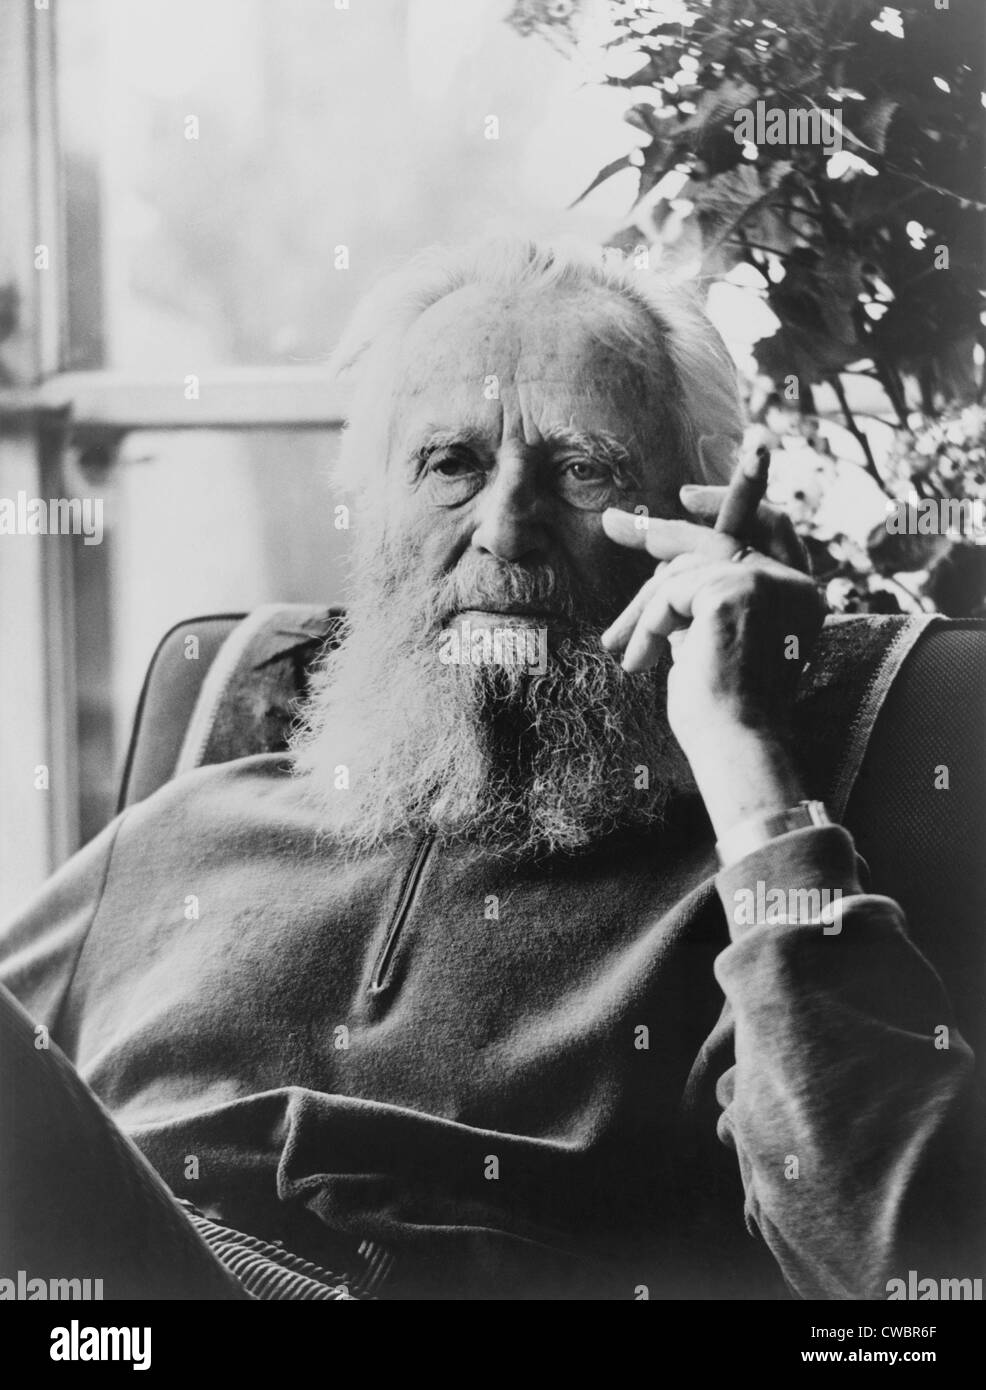 Edward Steichen (1879-1973), der berühmte Fotograf bei 86, raucht eine Zigarre im Jahr 1965. Drei Jahre zuvor veröffentlicht er seine Stockfoto